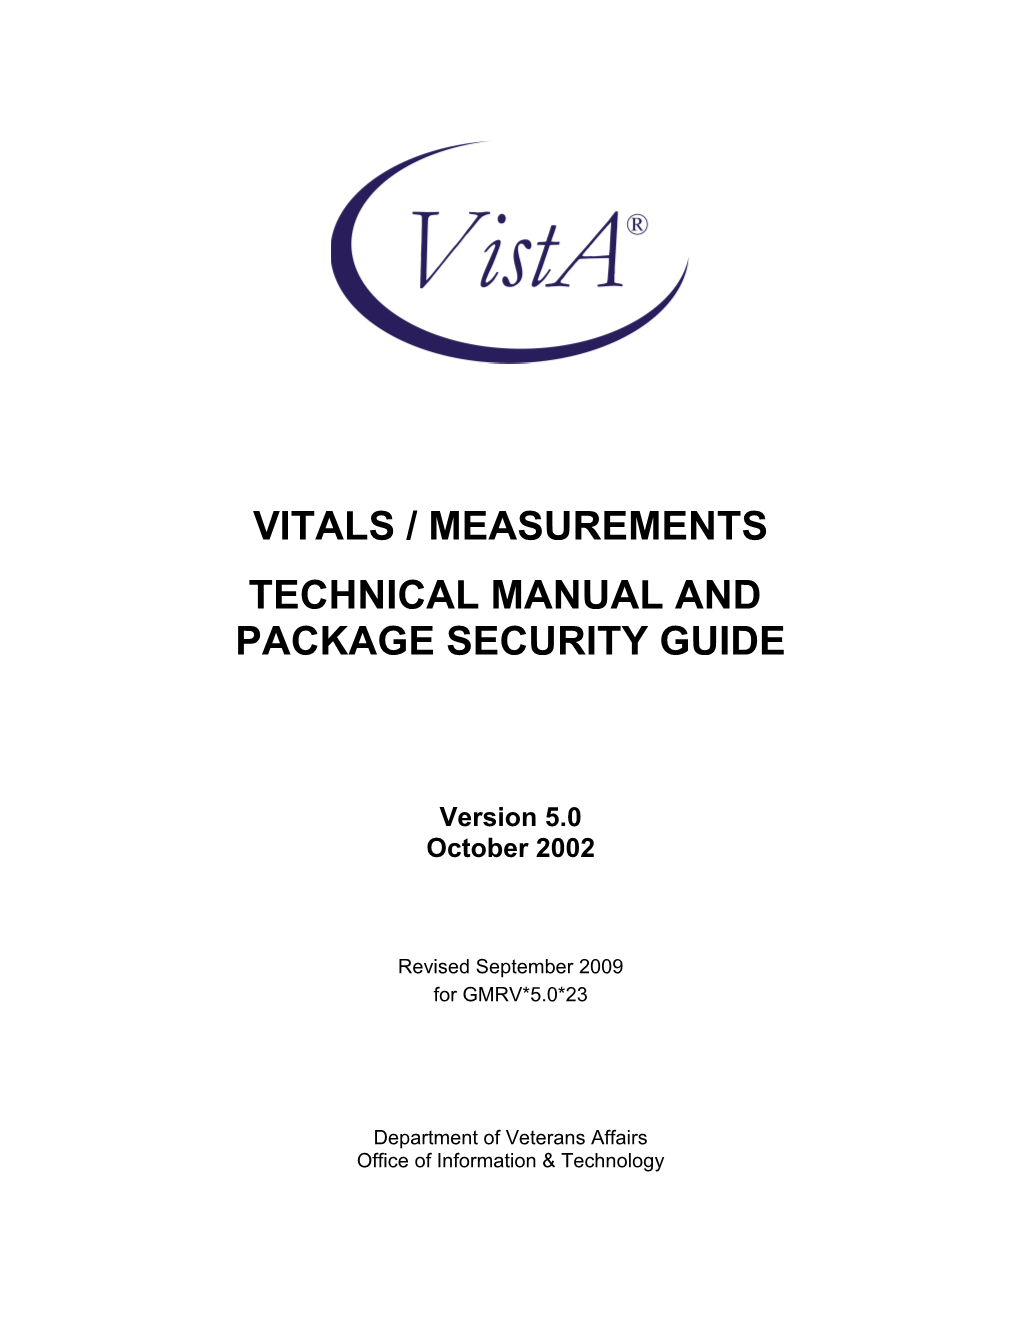 Vitals / Measurements